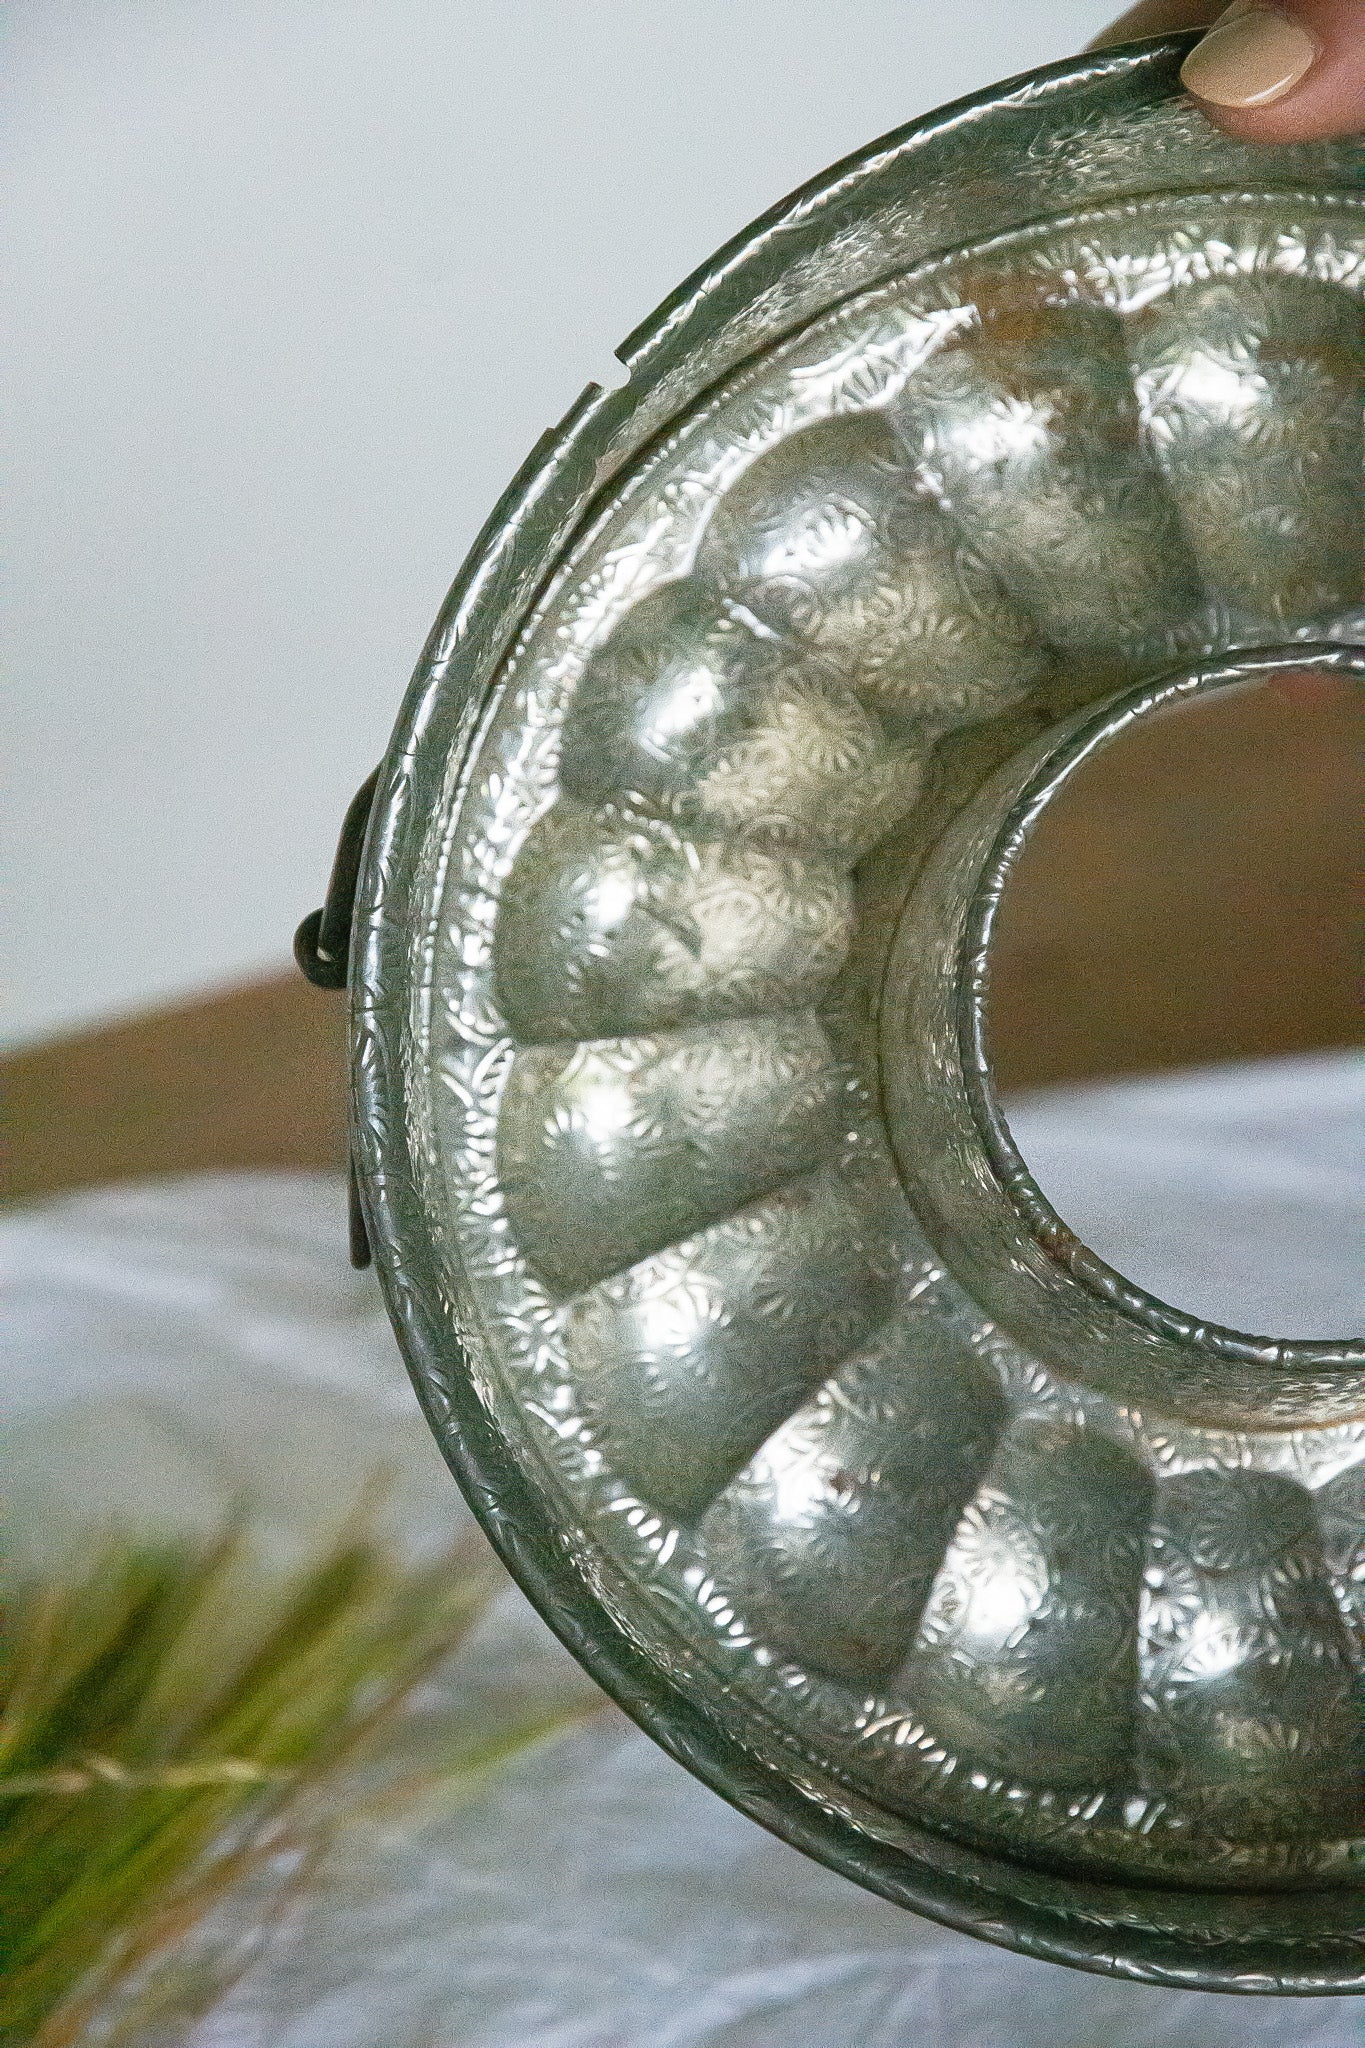 Ancien moule à manqué en métal, décoratif, ne ferme plus parfaitement et possède quelques traces de rouille le rendant inutilisable en cuisine. 